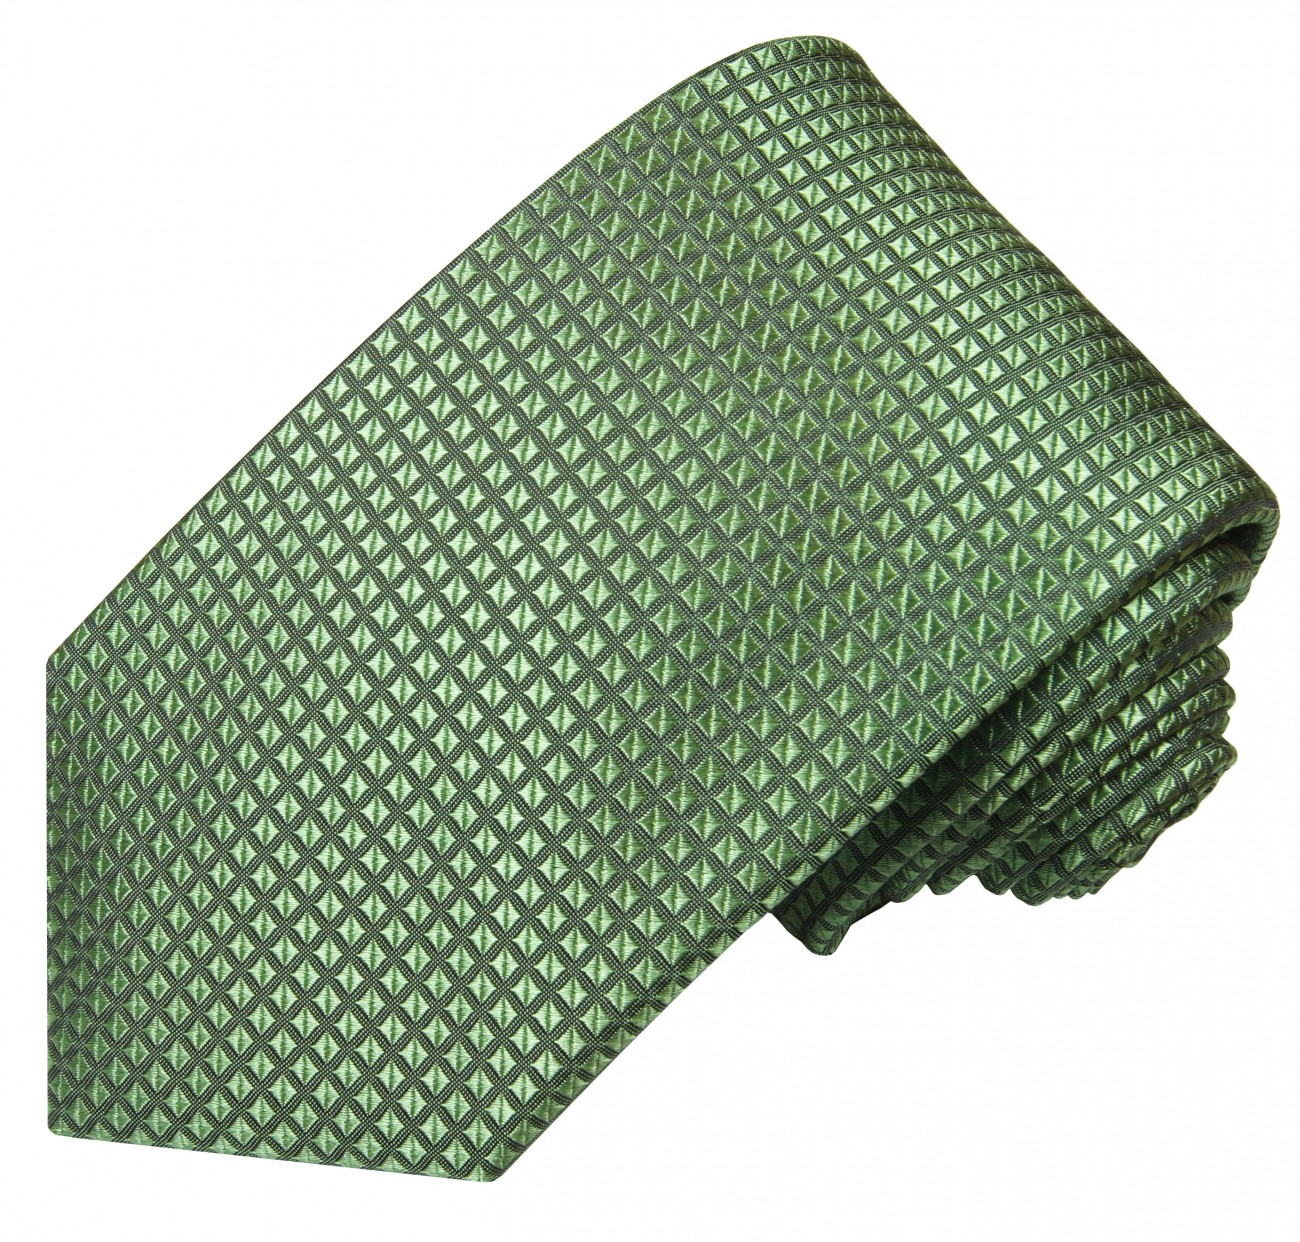 Krawatte grün